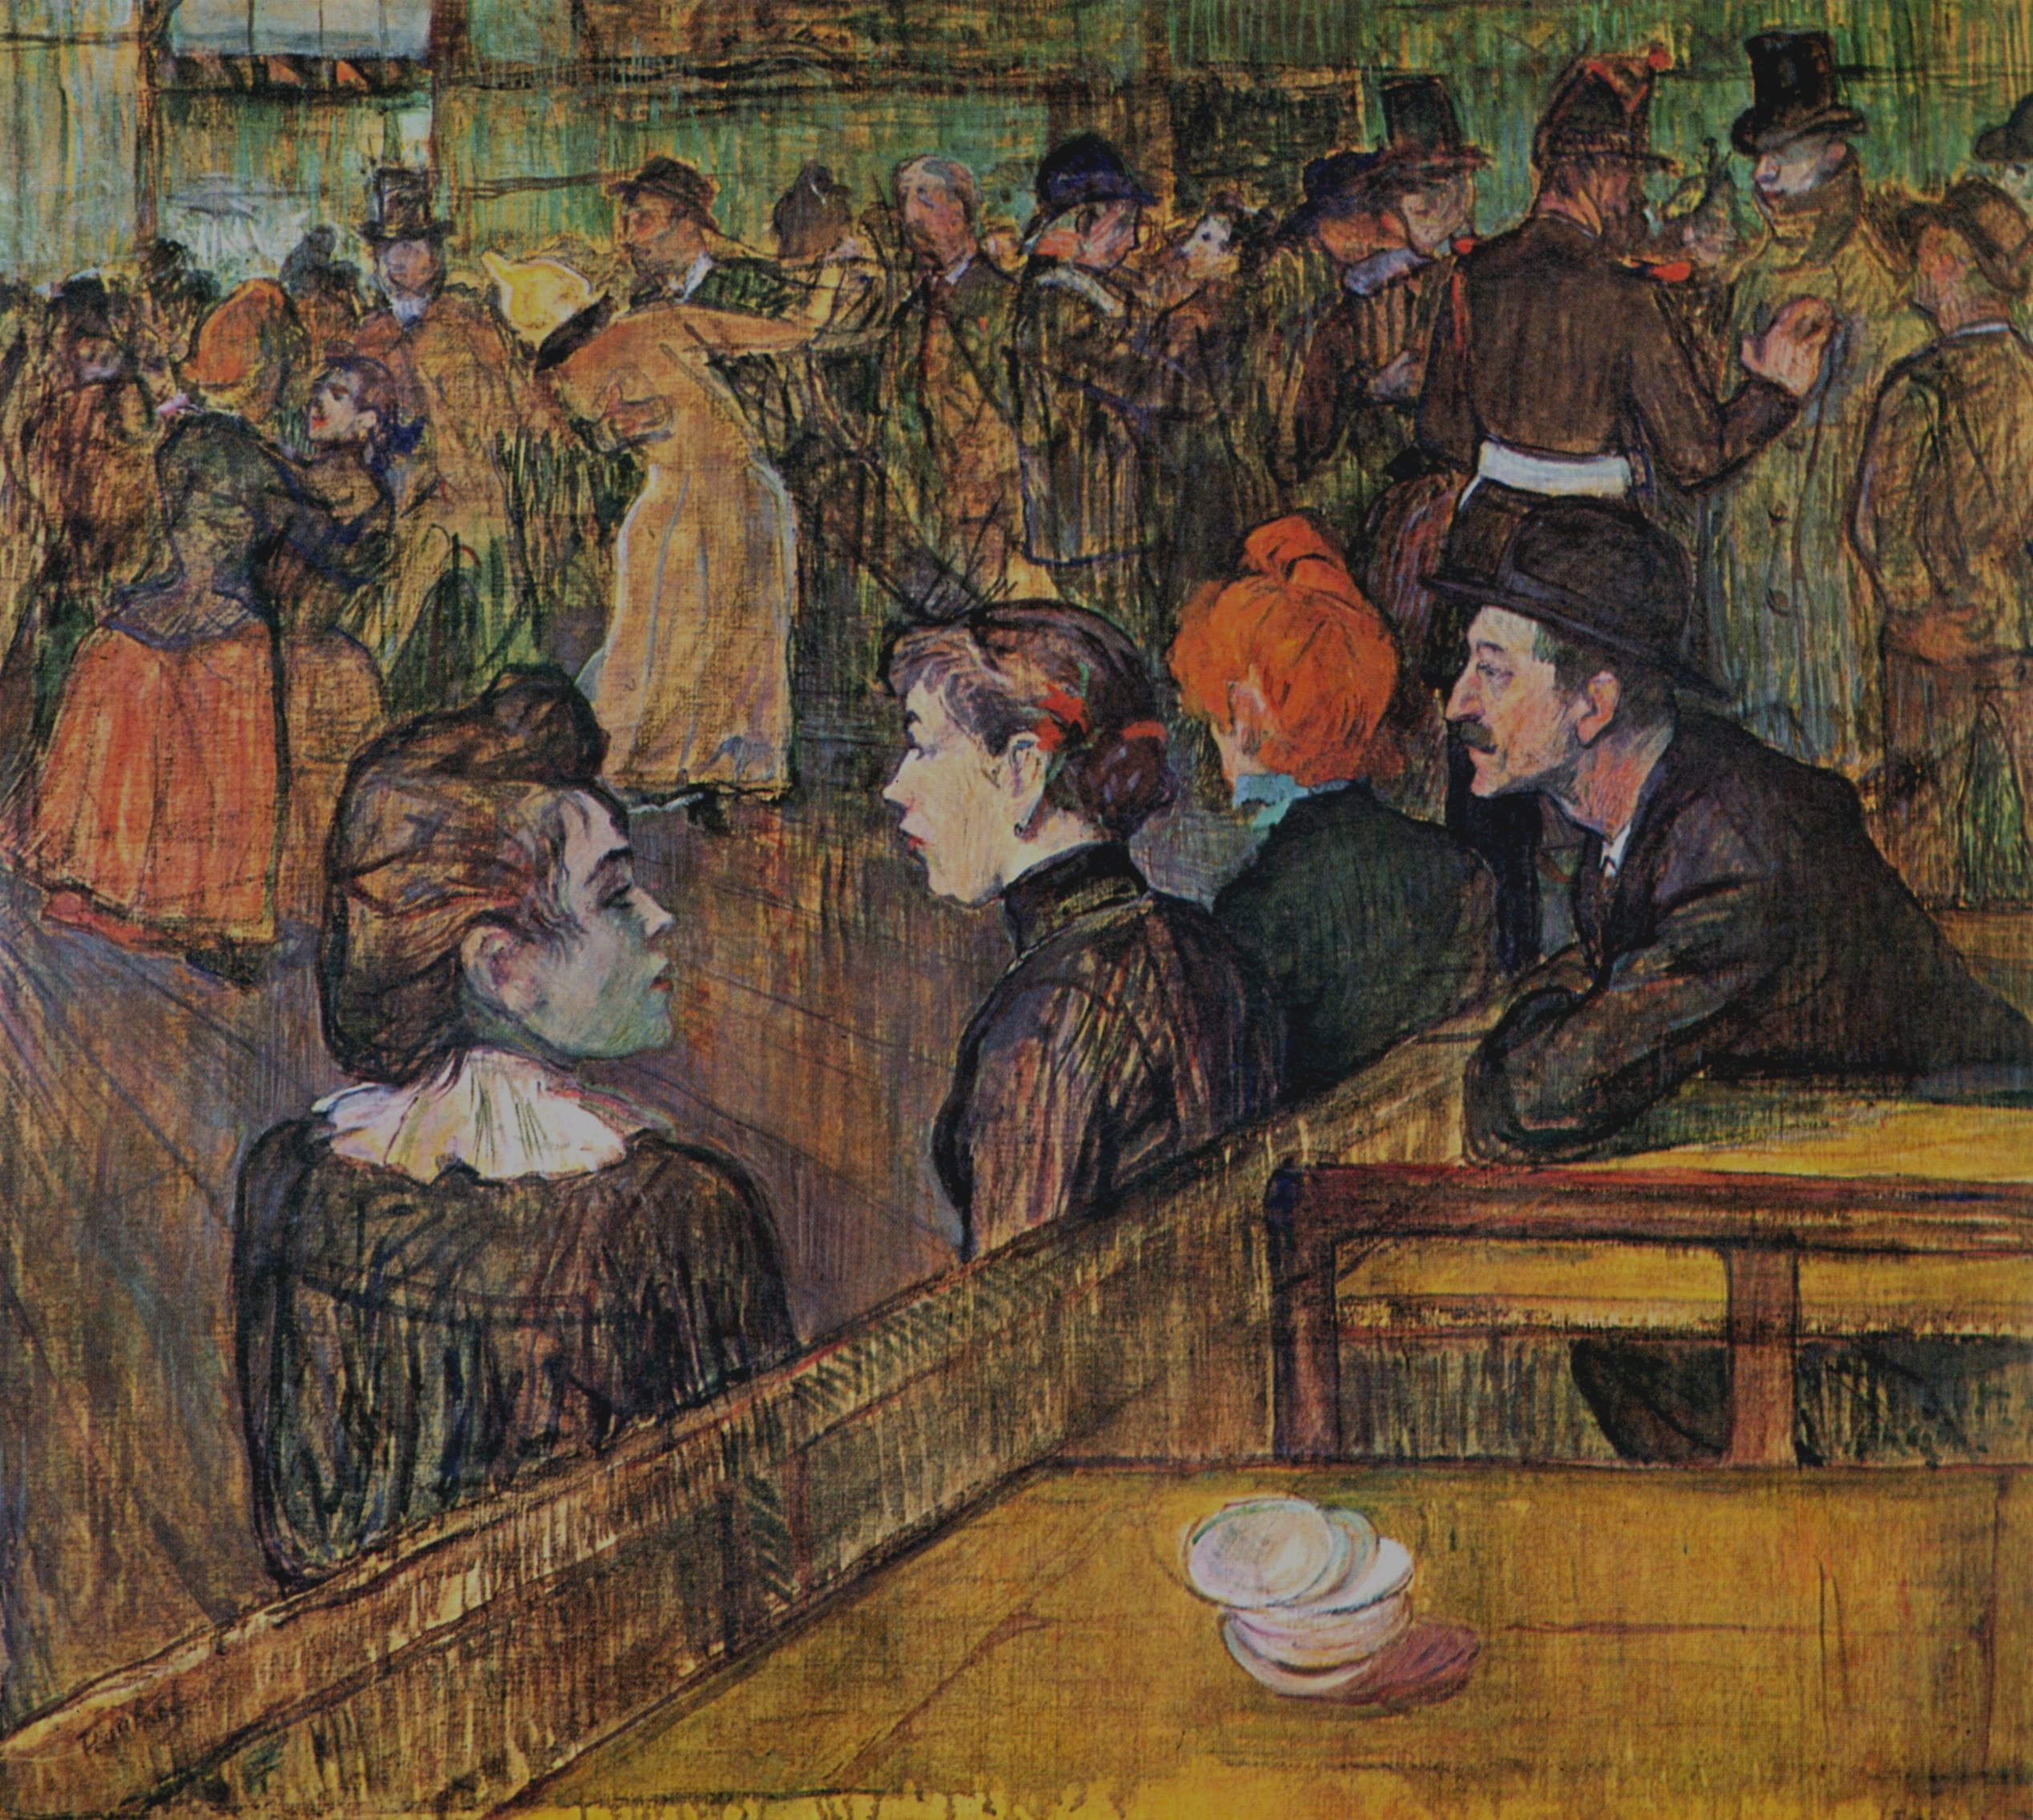 煎餅磨坊的舞會 by Henri de Toulouse-Lautrec - 1889 - 88.5 x 101.3 cm 